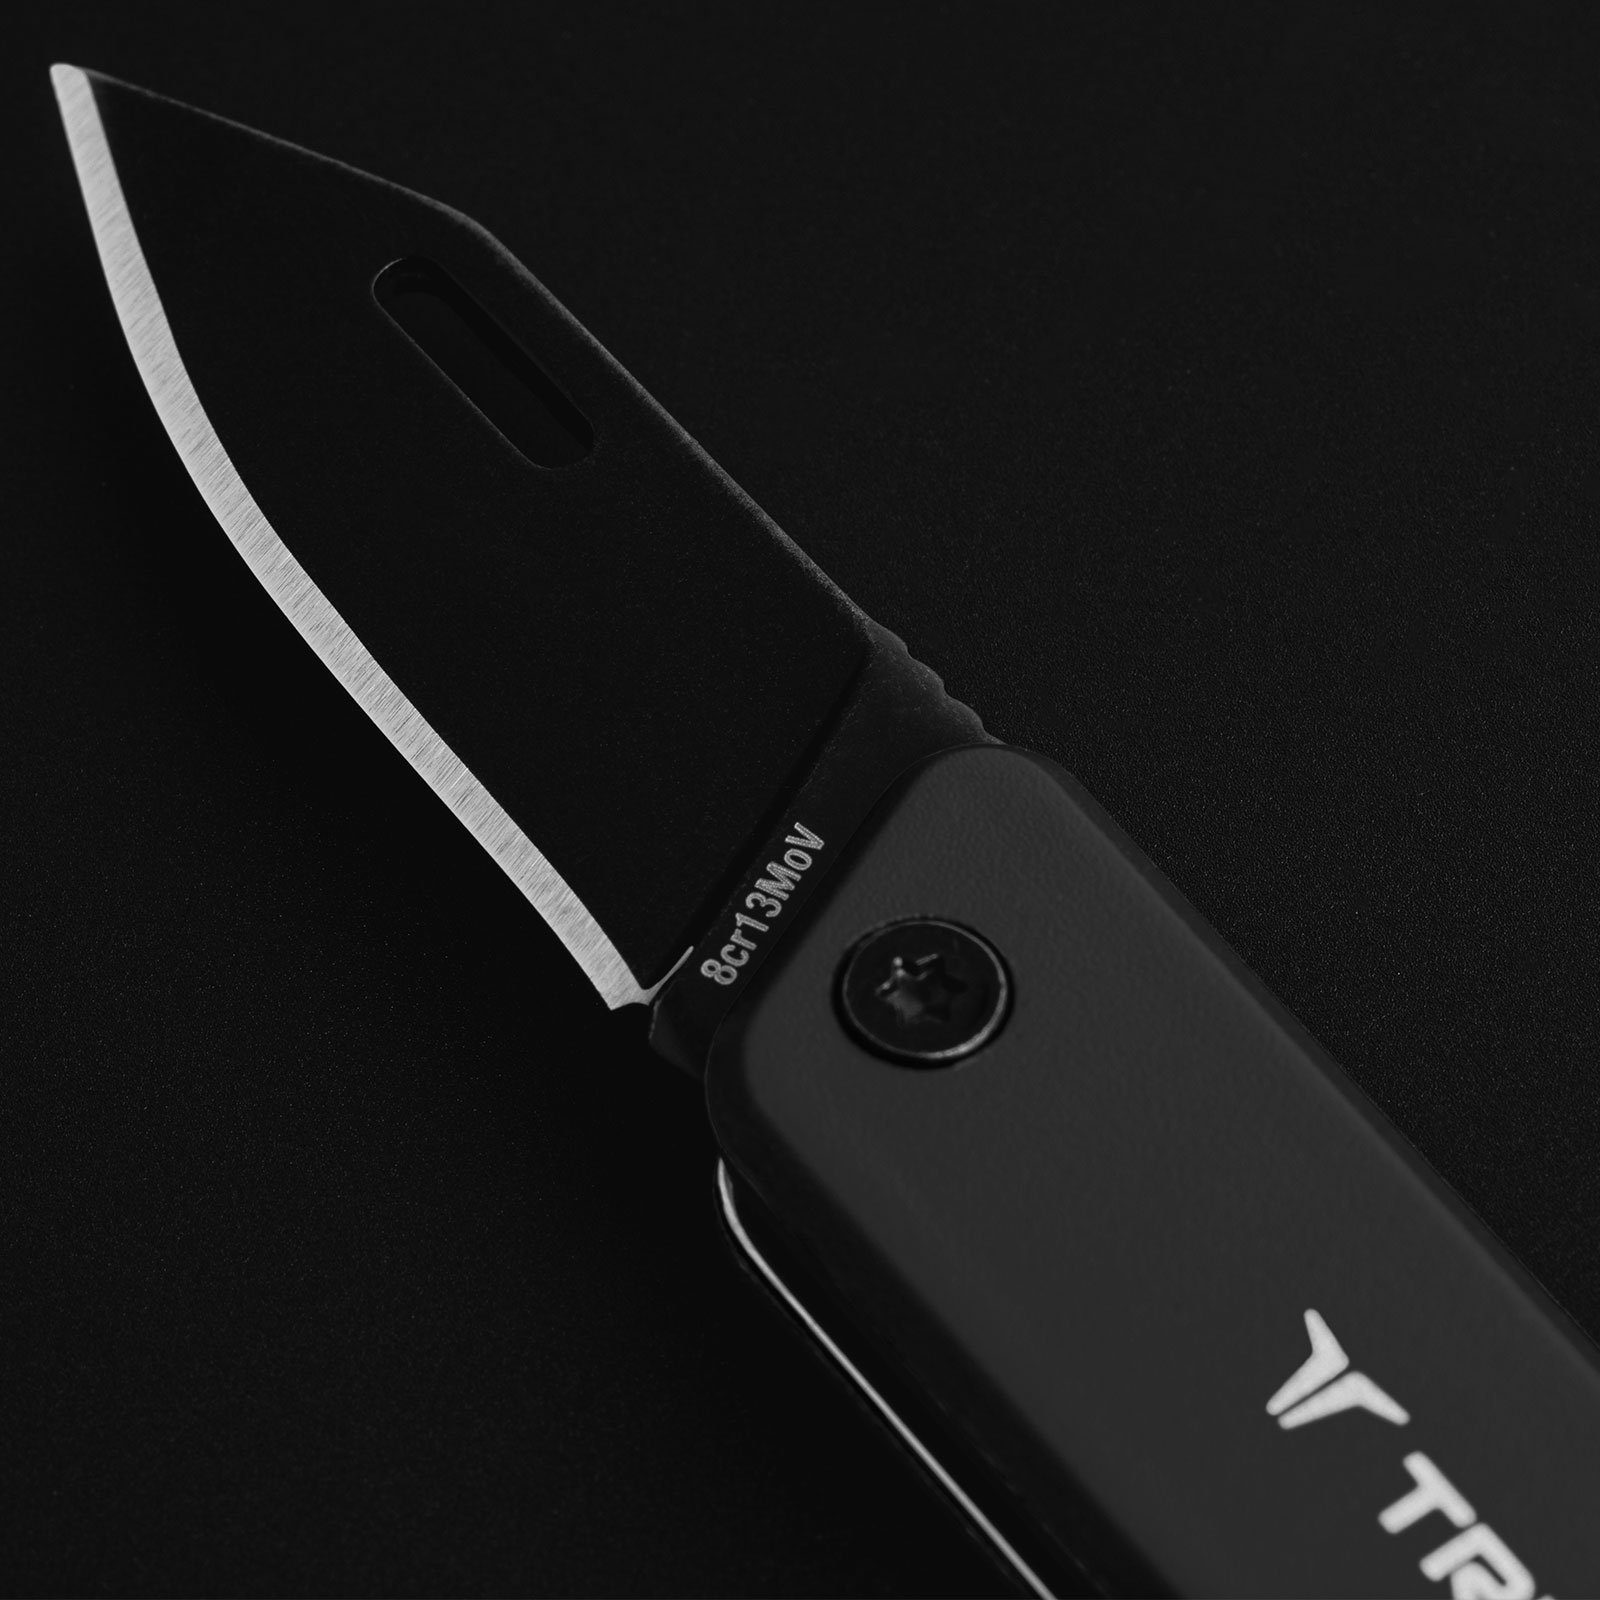 Key True Chain Grau Taschenmesser Knife, Messer Mini Taschenmesser Utility Schlüsselanhänger Tool